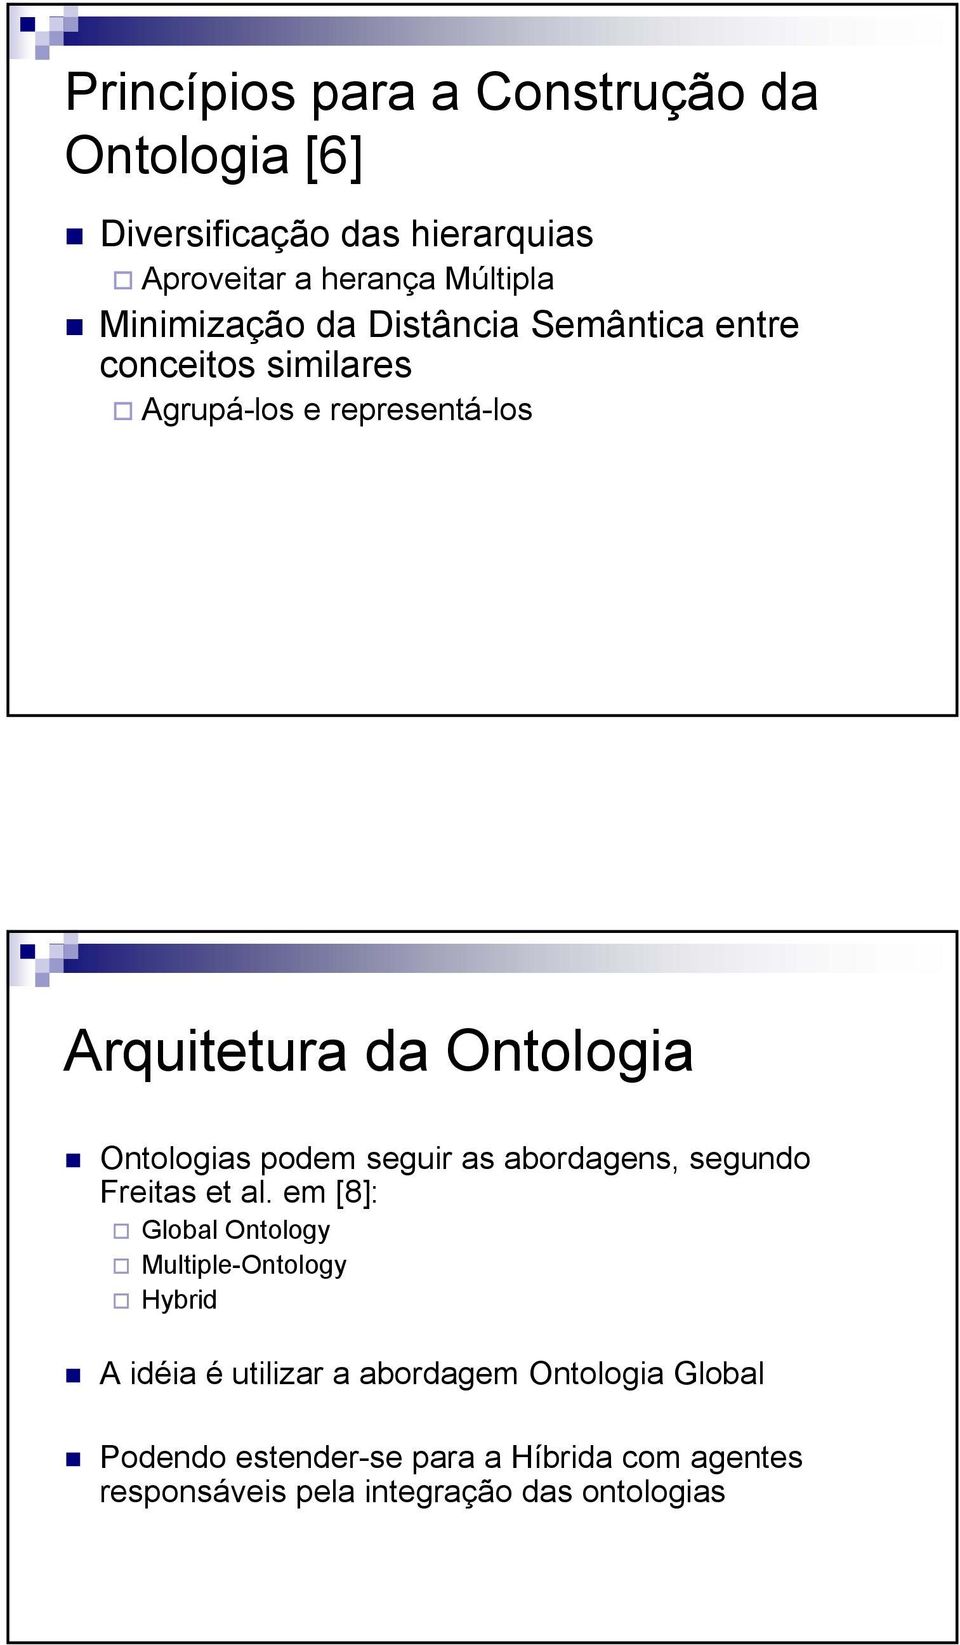 Ontologias podem seguir as abordagens, segundo Freitas et al.